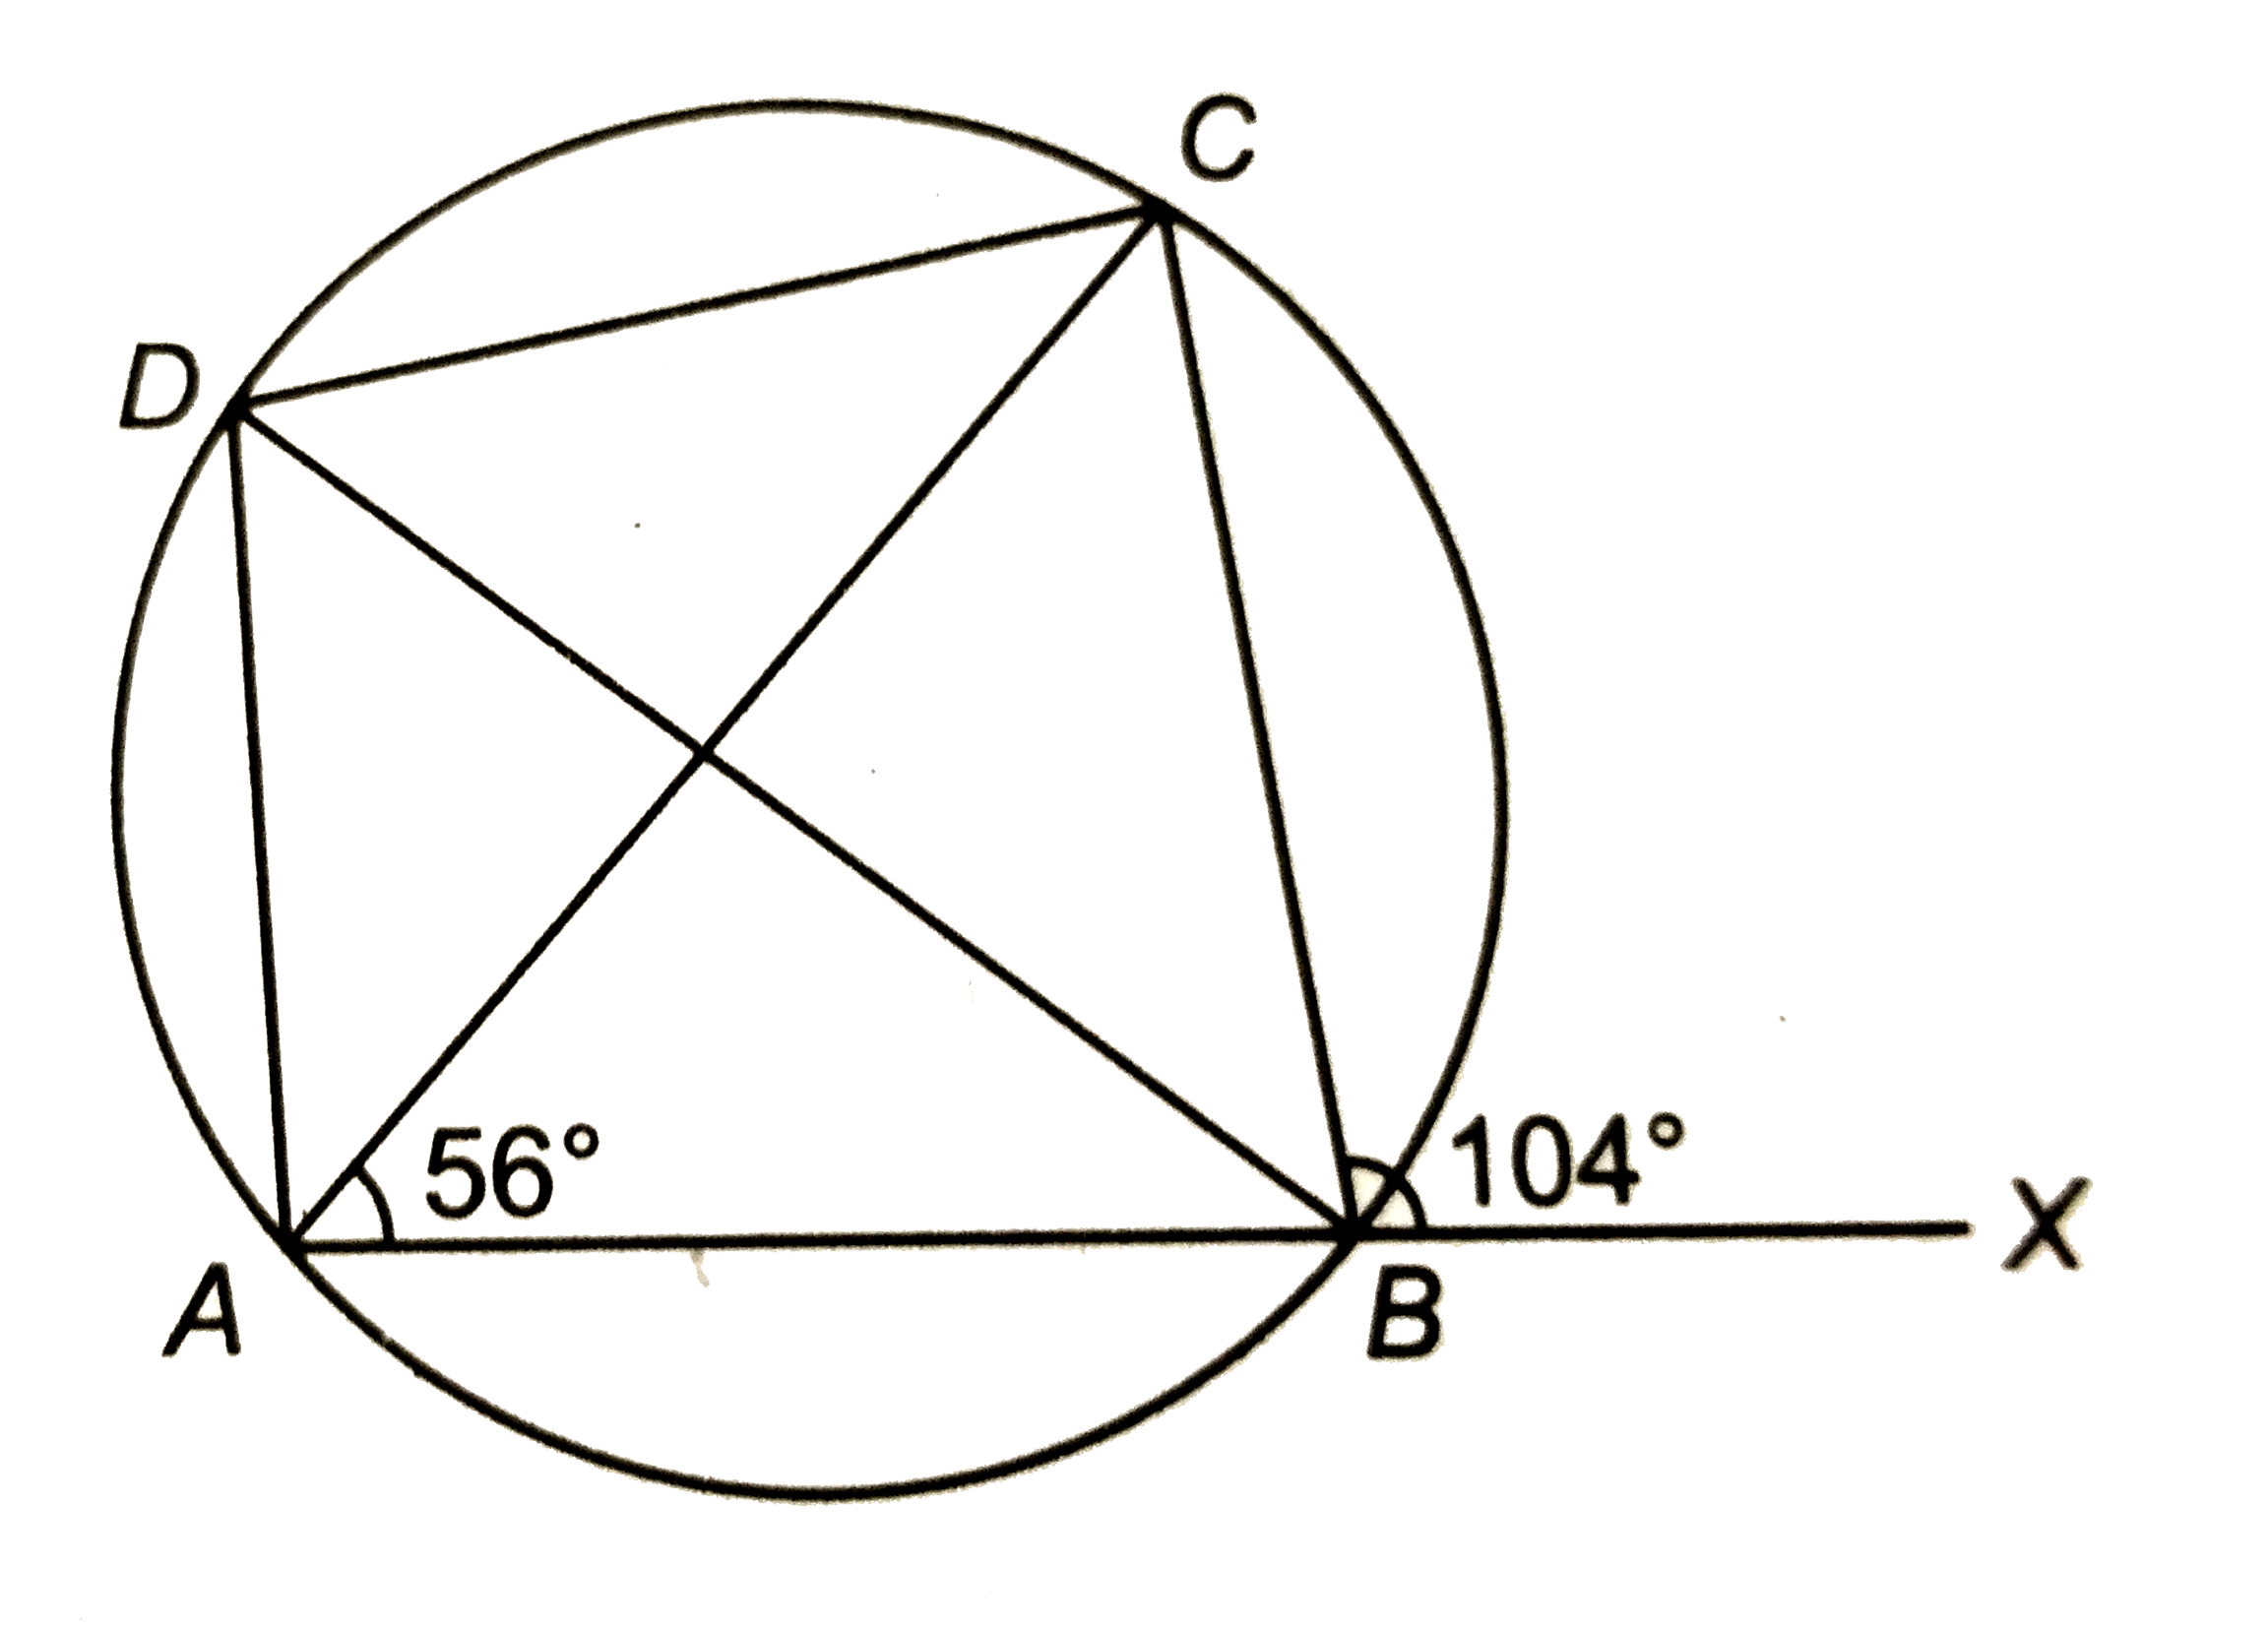 संलग्न चित्र में, ABCD एक चक्रीय चतुर्भुज है | यदि angleCBX=104^(@) और angleCAB=56^(@), तो angleADB का मान ज्ञात कीजिए |